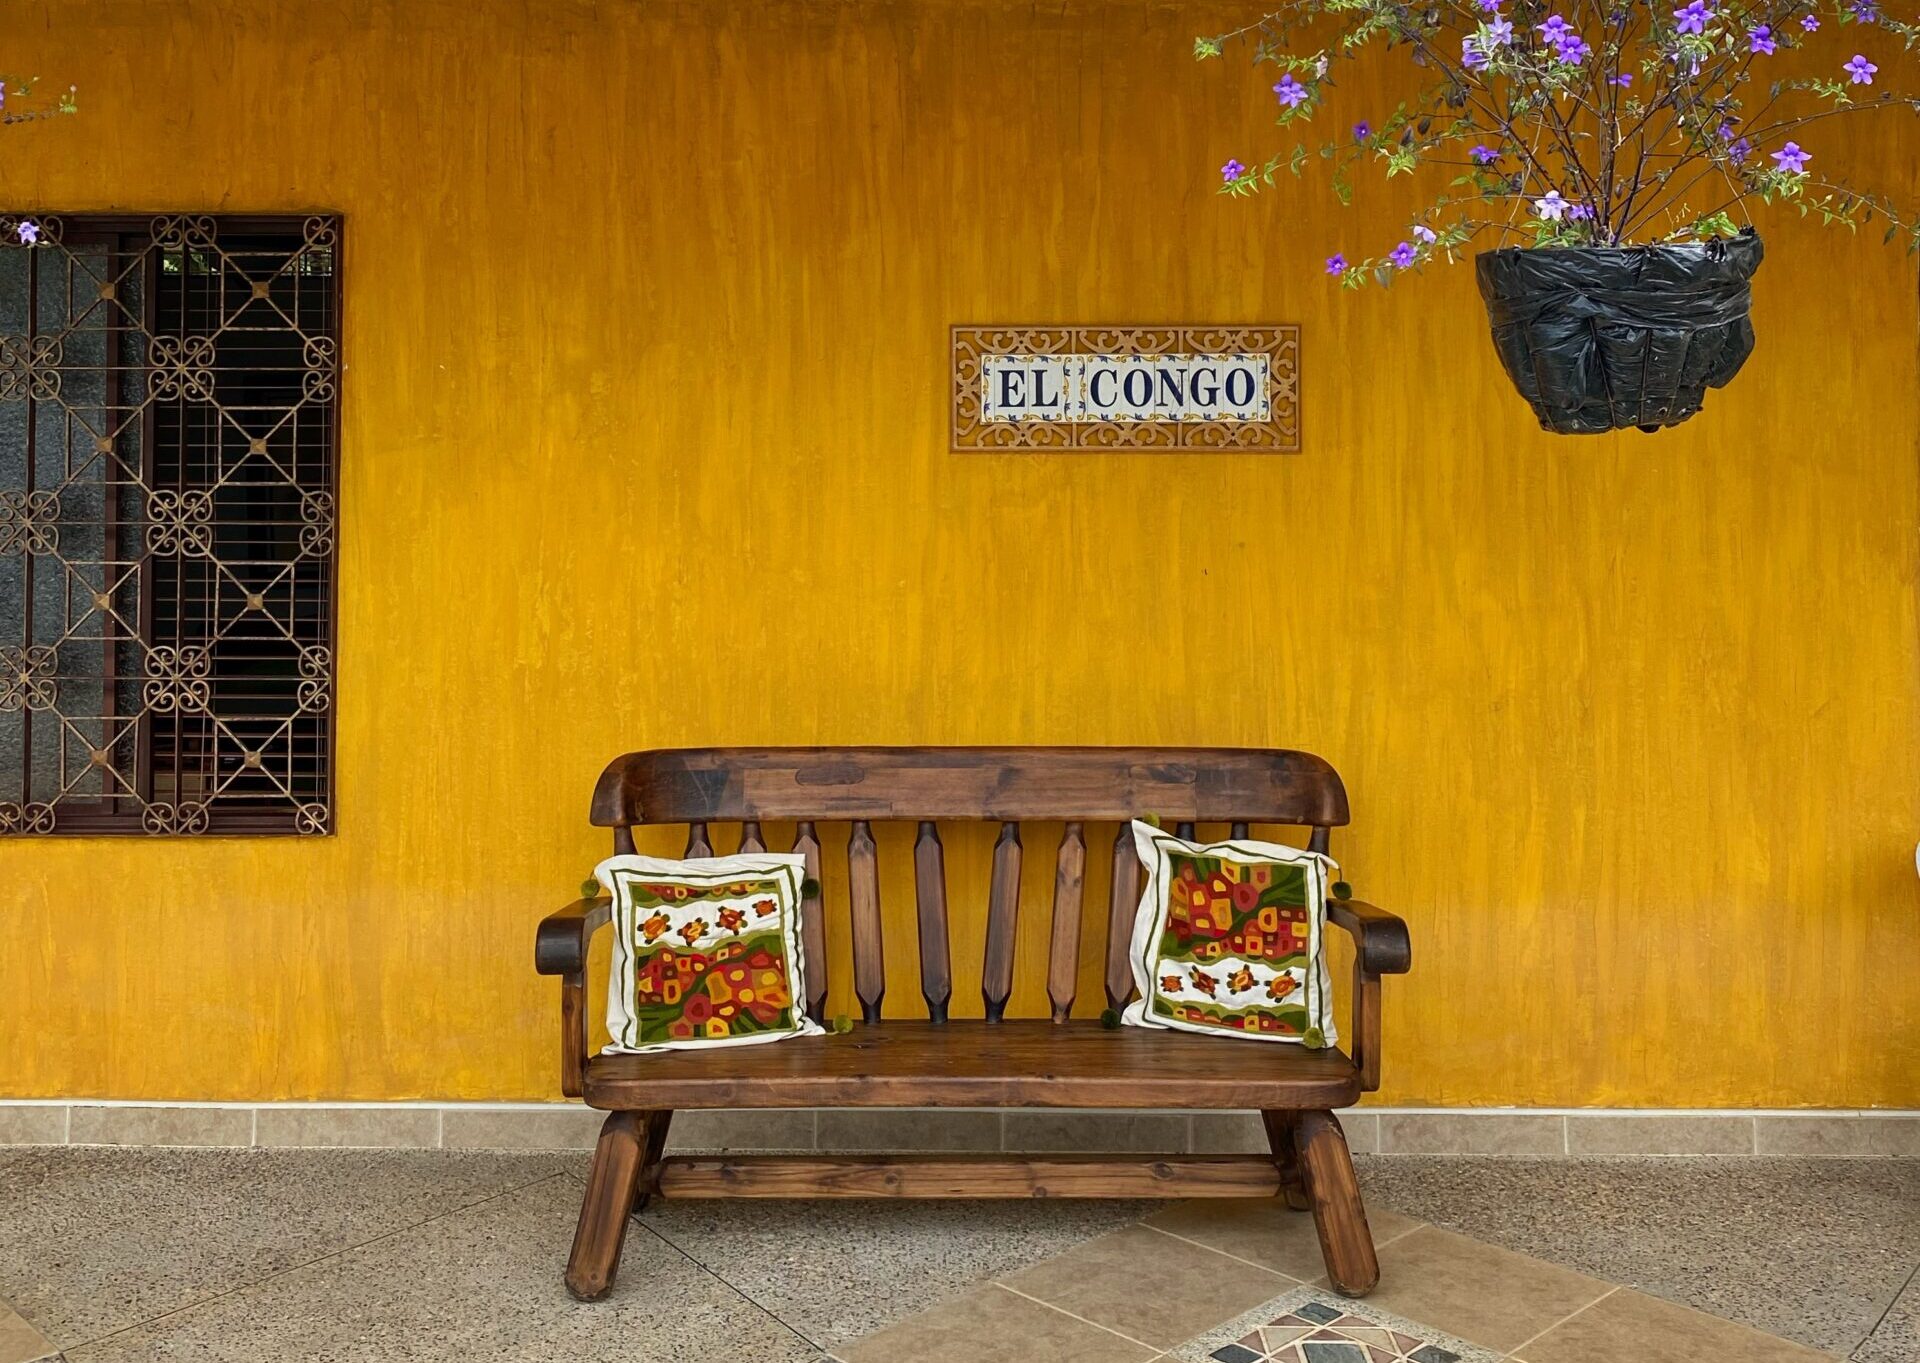 fachada de una casa amarilla con azulejos que dicen "El Congo" y una maceta colgando con flores moradas. Al frente hay una banca de madera con dos cojines